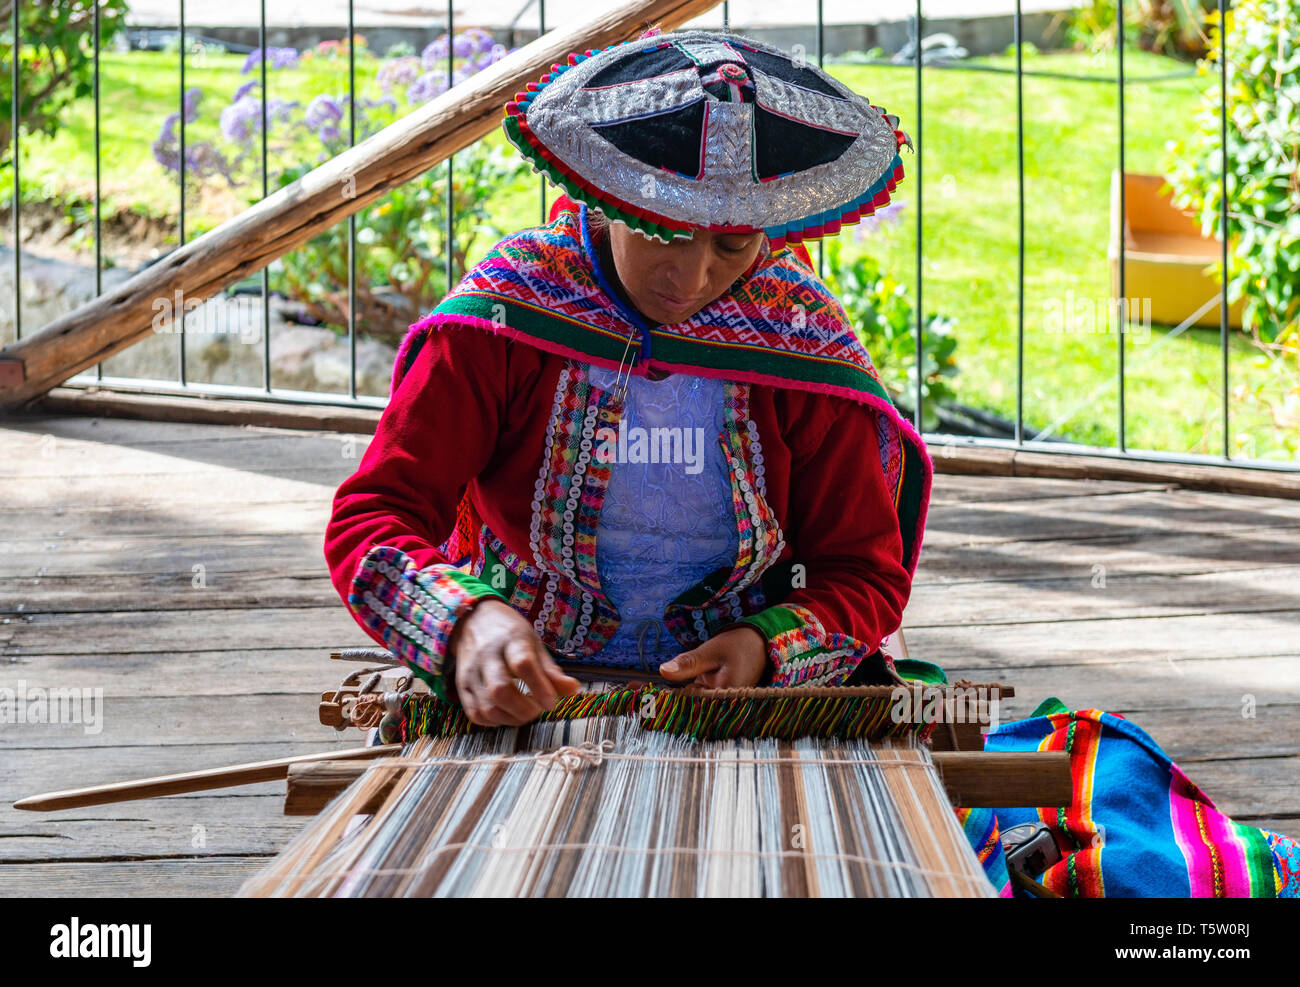 Una mujer indígena Quechua, mostrando la técnica de tejido y la fabricación de textiles en la cordillera de Los Andes de América del Sur en Cusco, Perú. Foto de stock